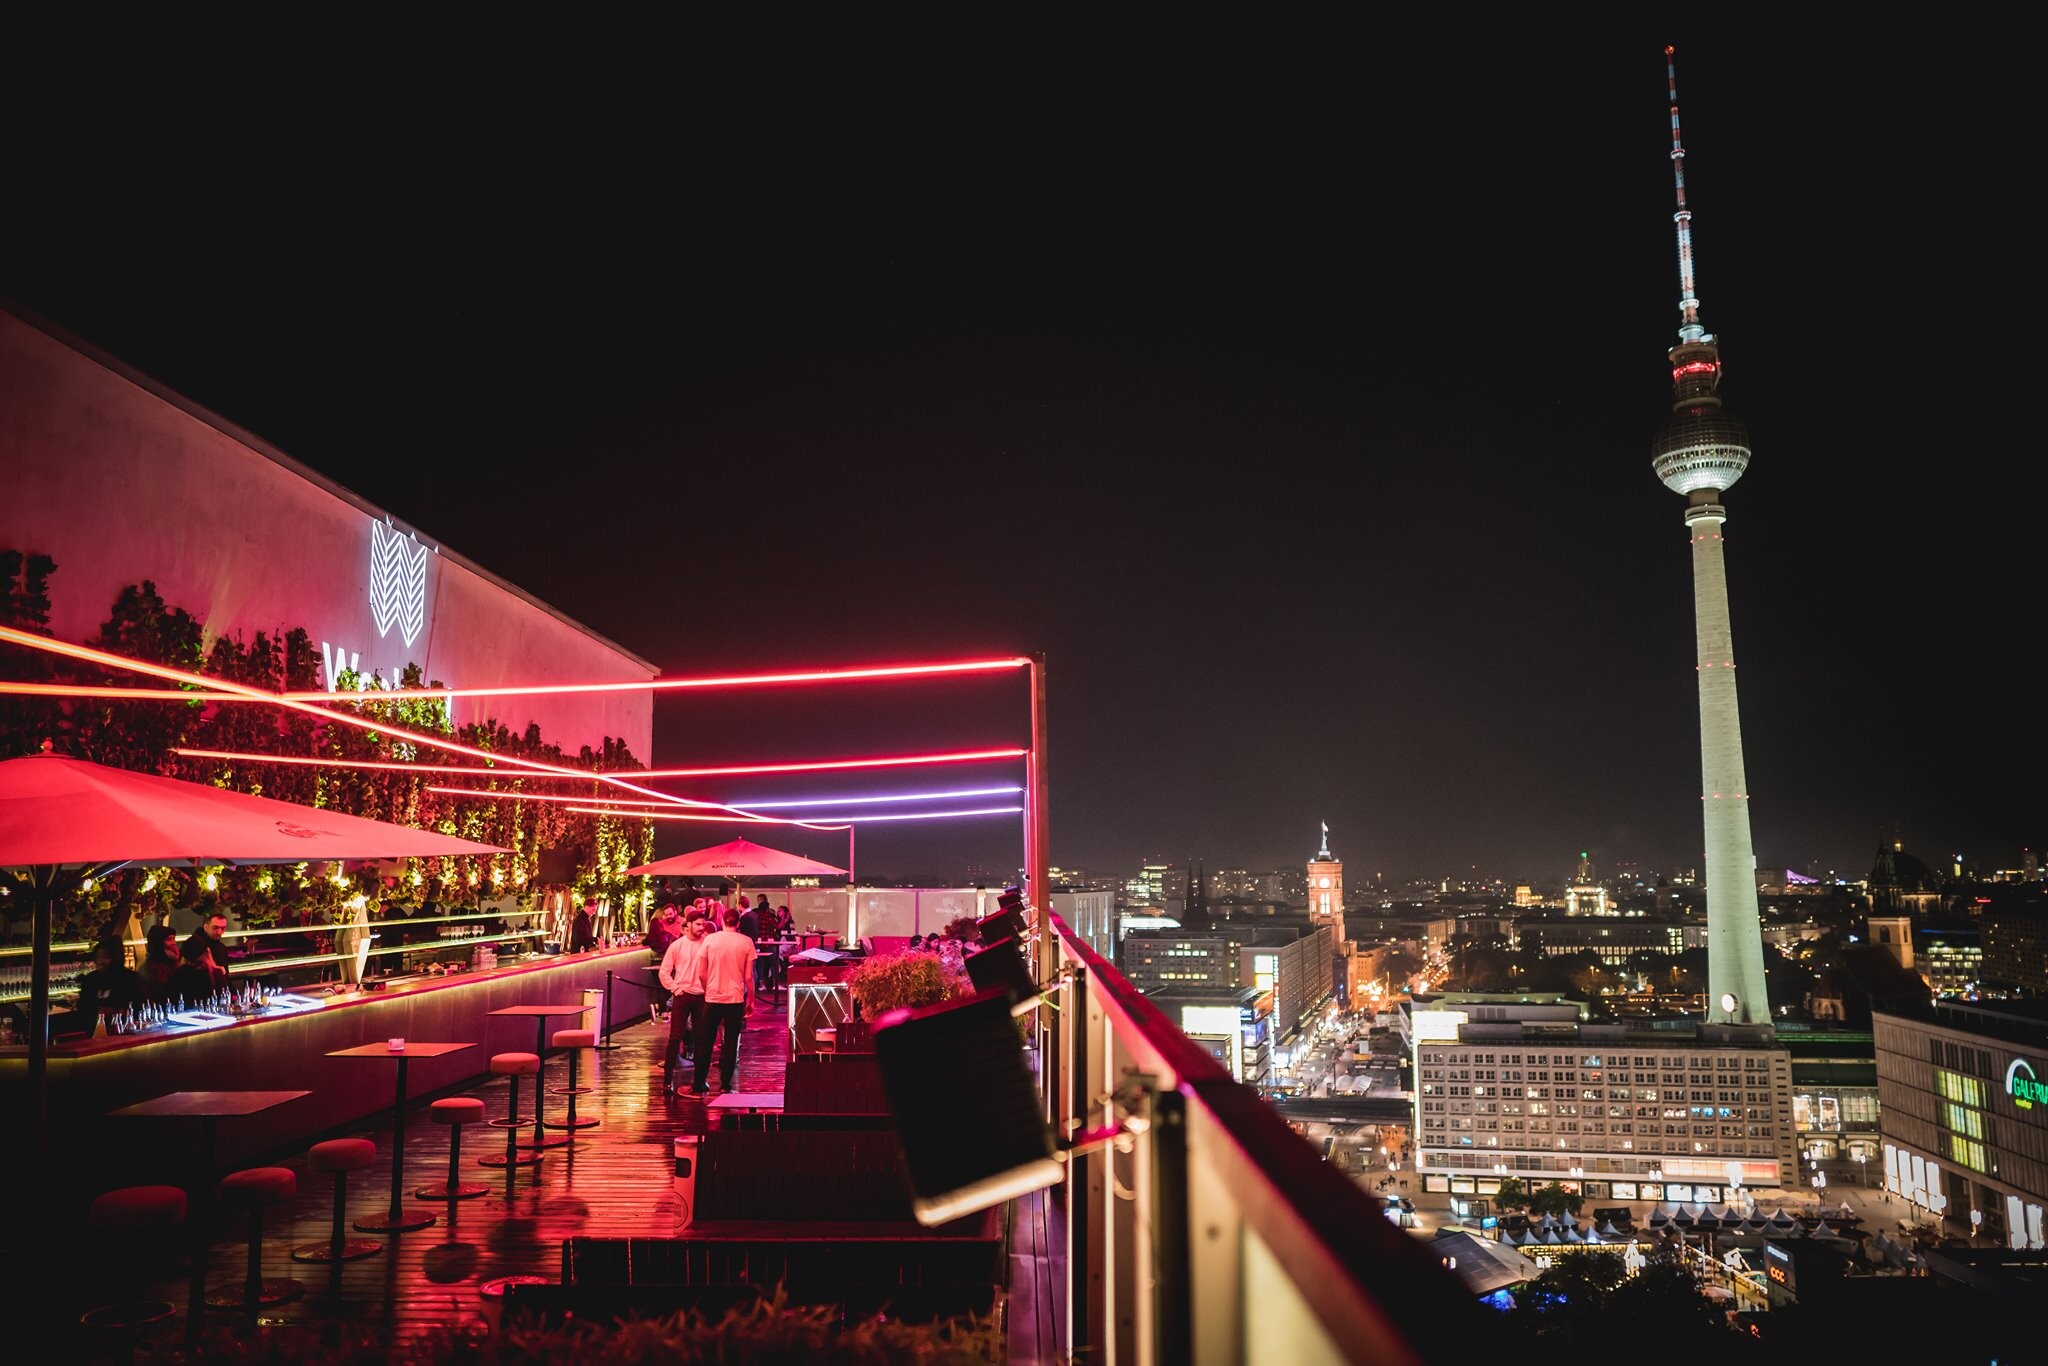 Club Weekend Berlin Eventflyer #2 vom 26.11.2021